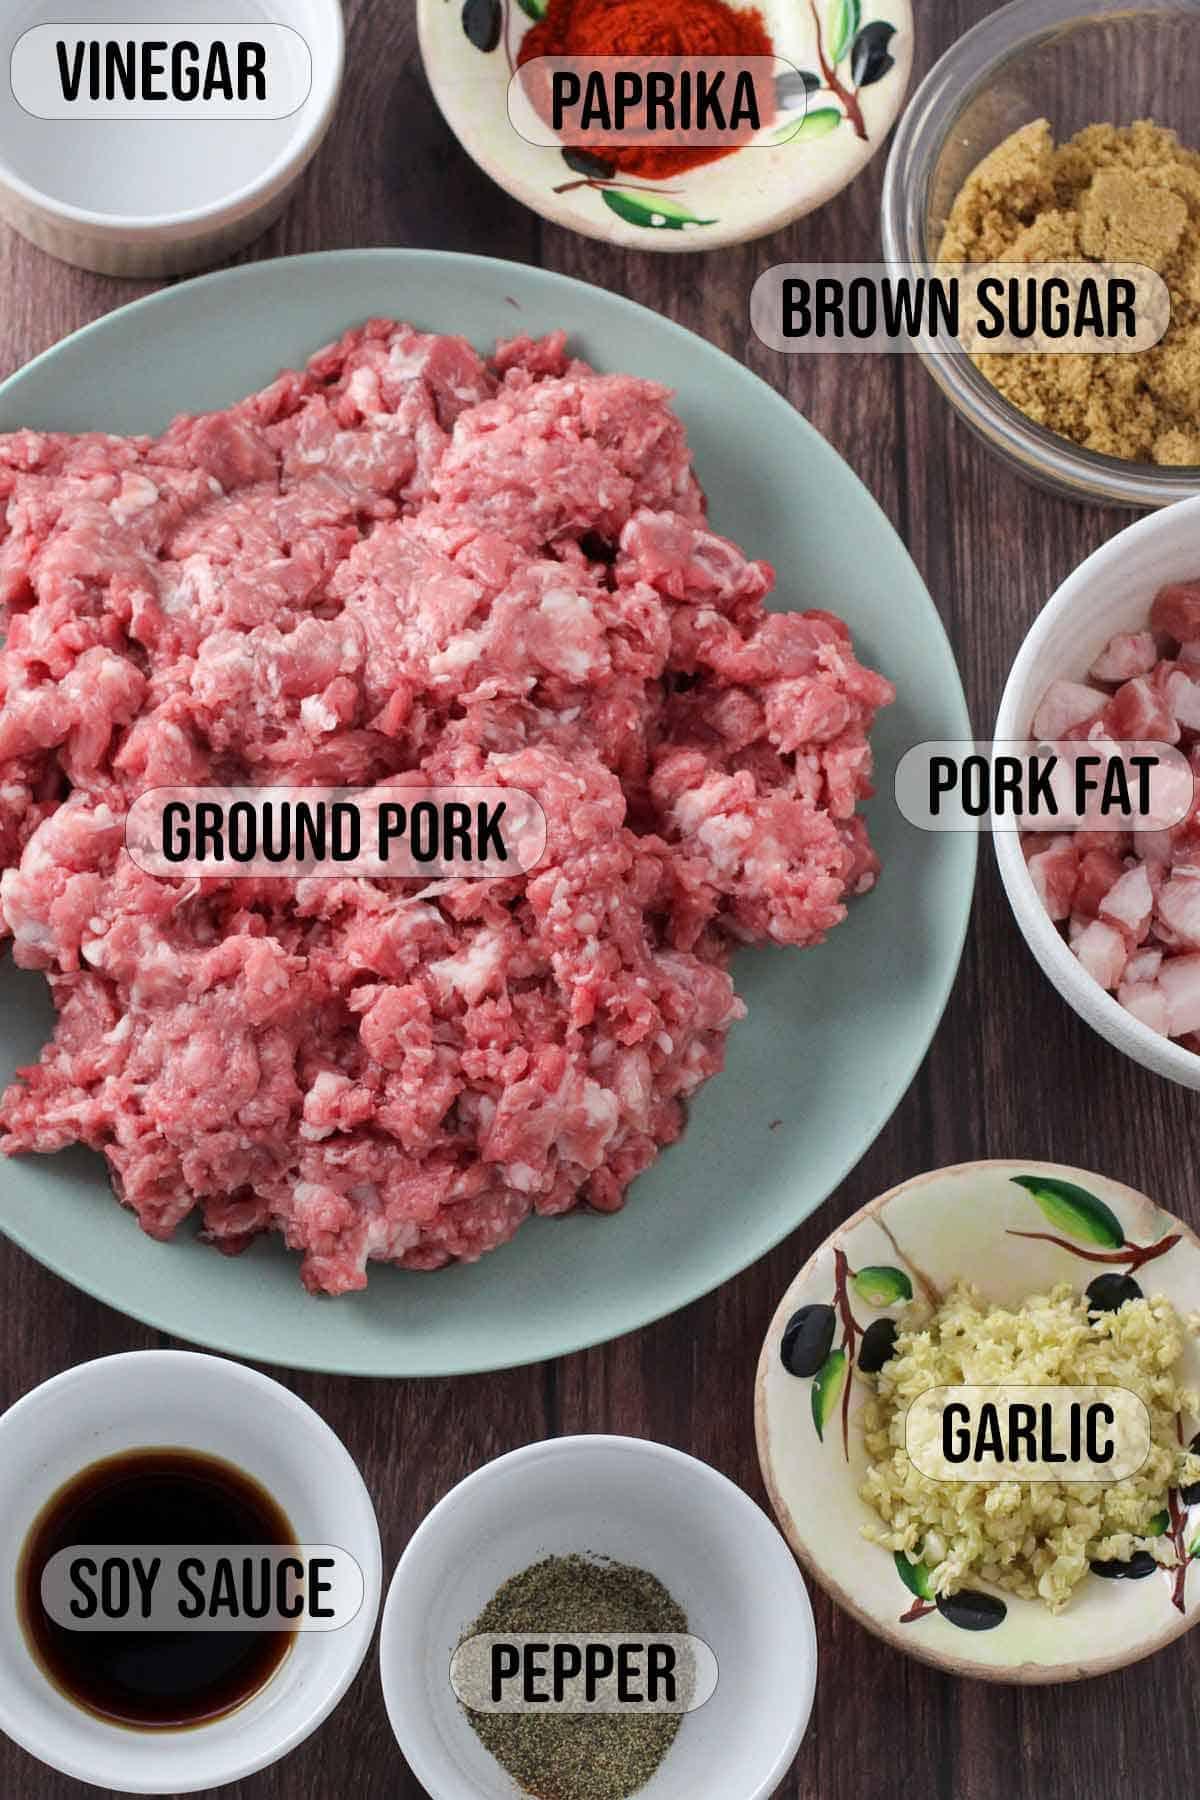 ground pork, ground pork fat, garlic, soy sauce, pepper, paprika, brown sugar, vinegar in bowls